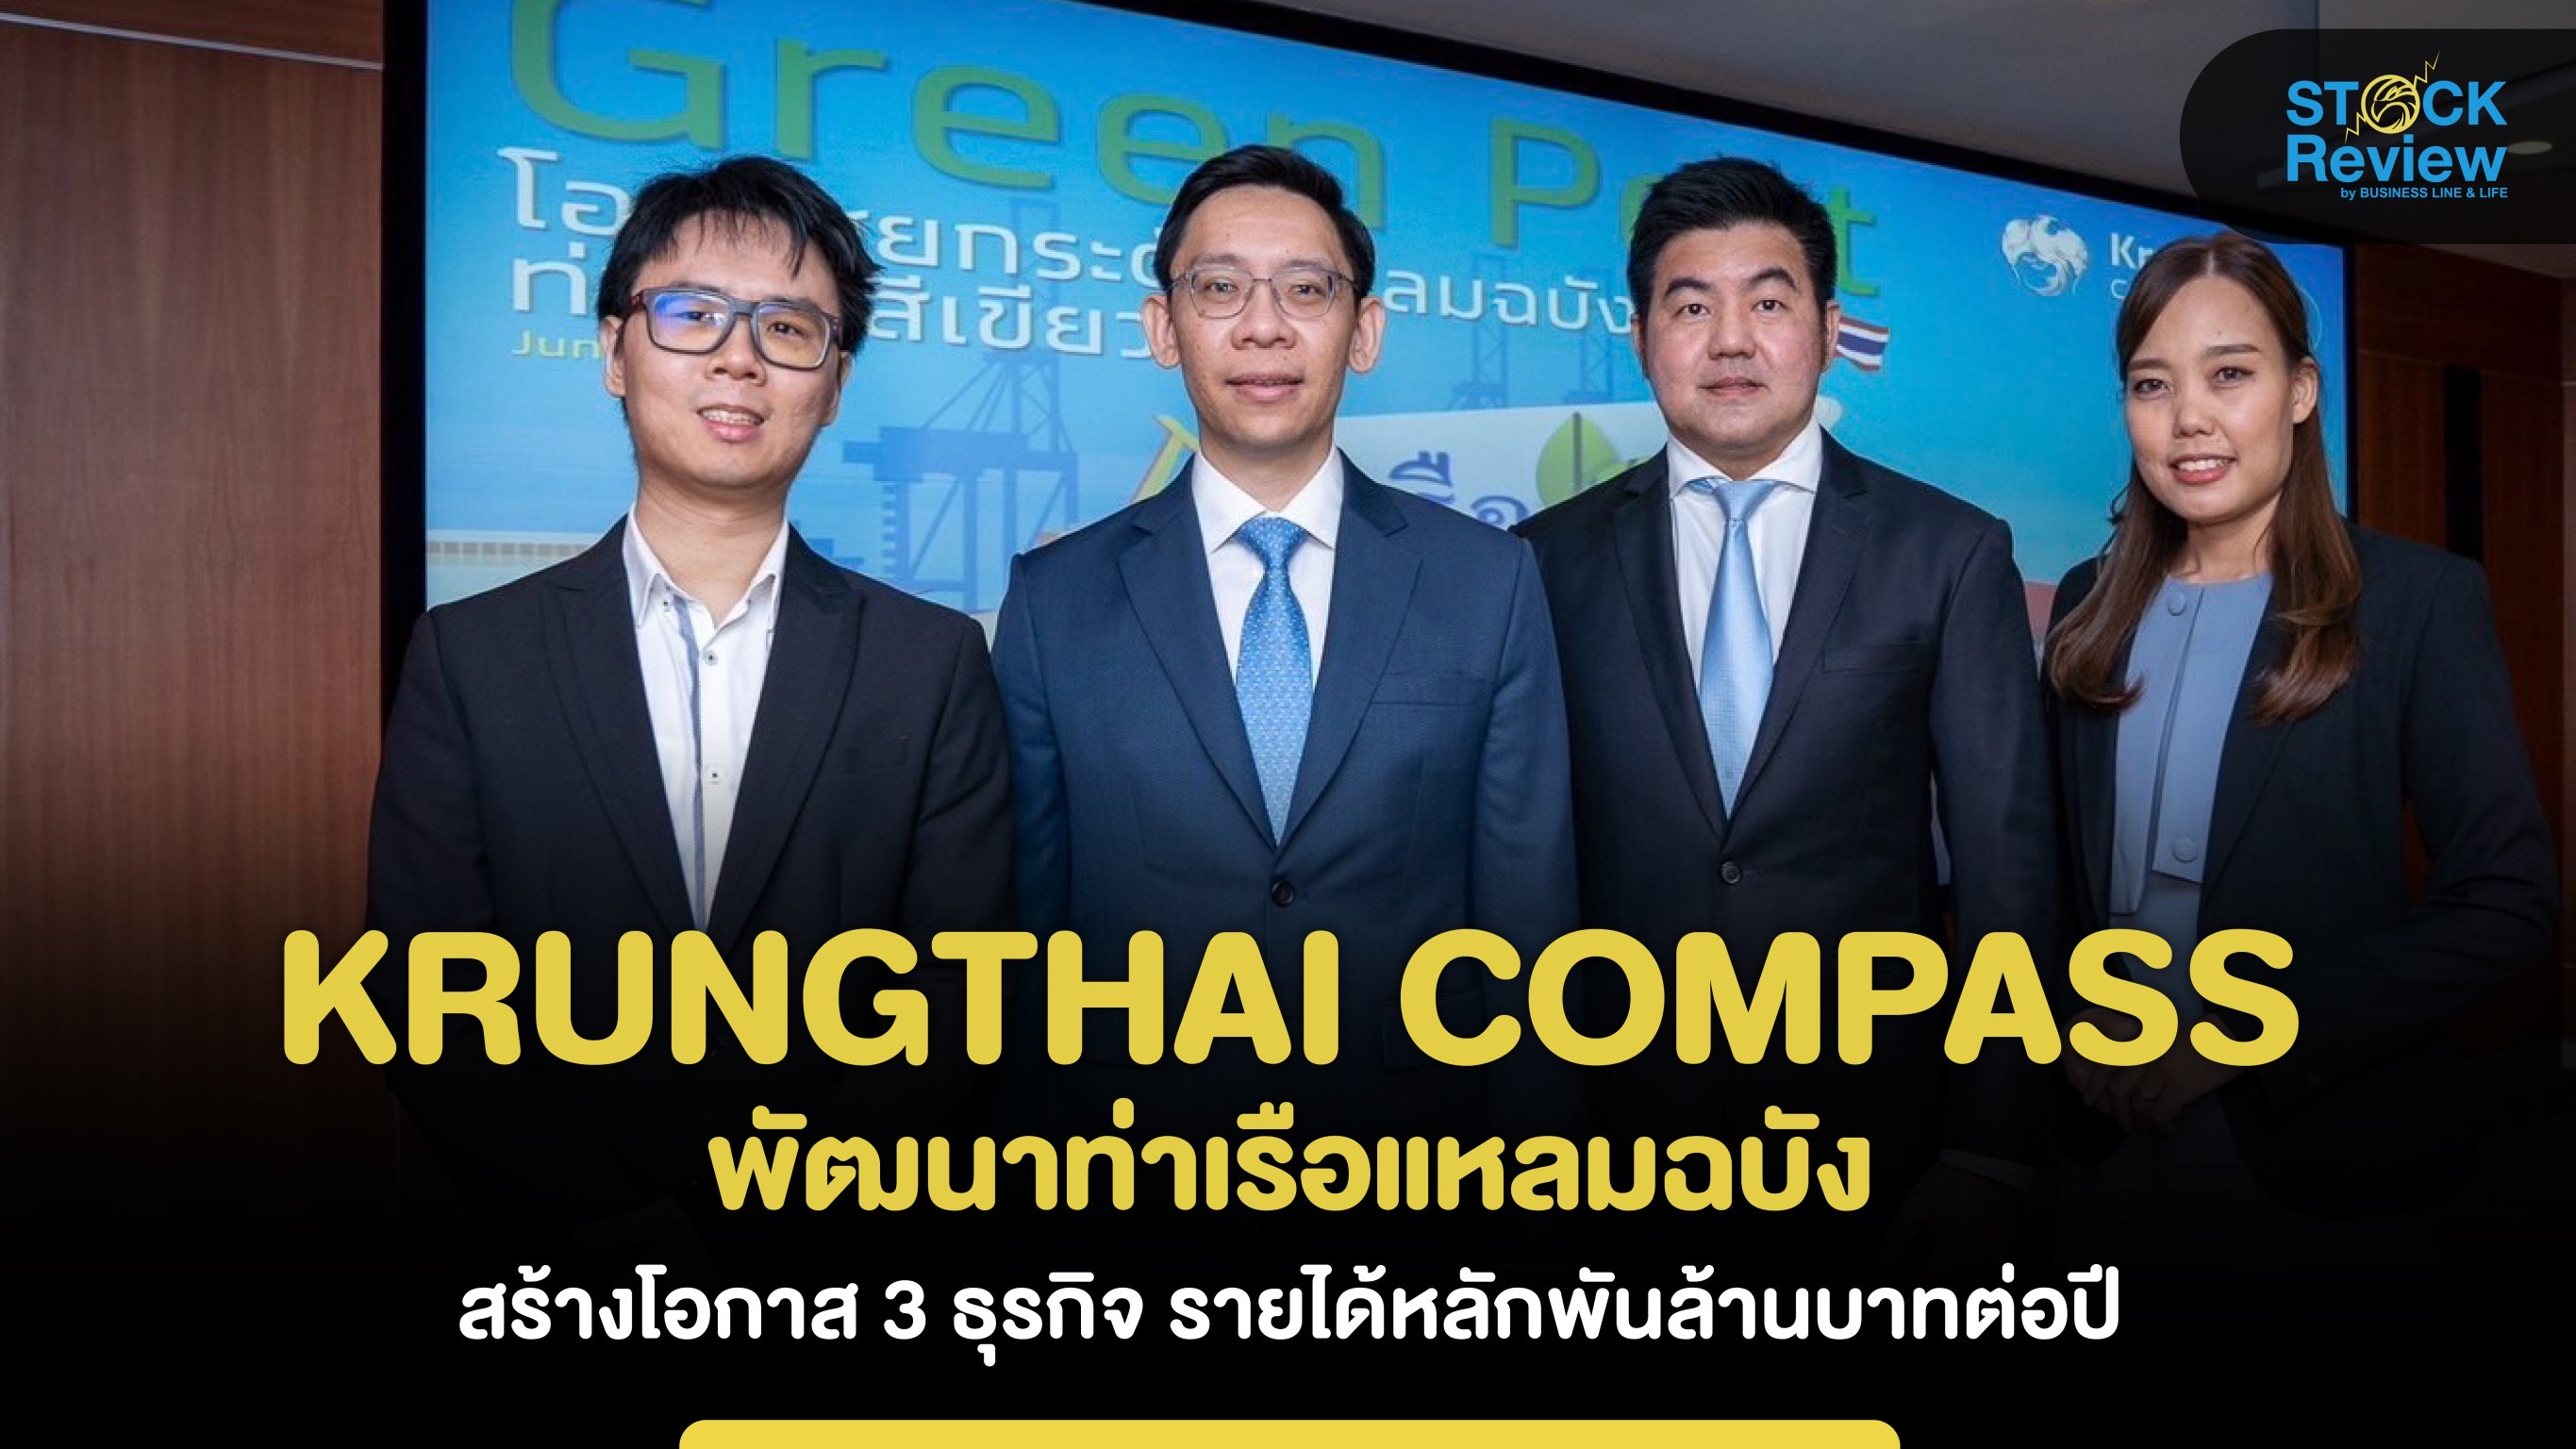 Krungthai Compass  ชี้แผนพัฒนาแหลมฉบังเฟส 3 สร้างรายได้พันล้านบาทต่อปี